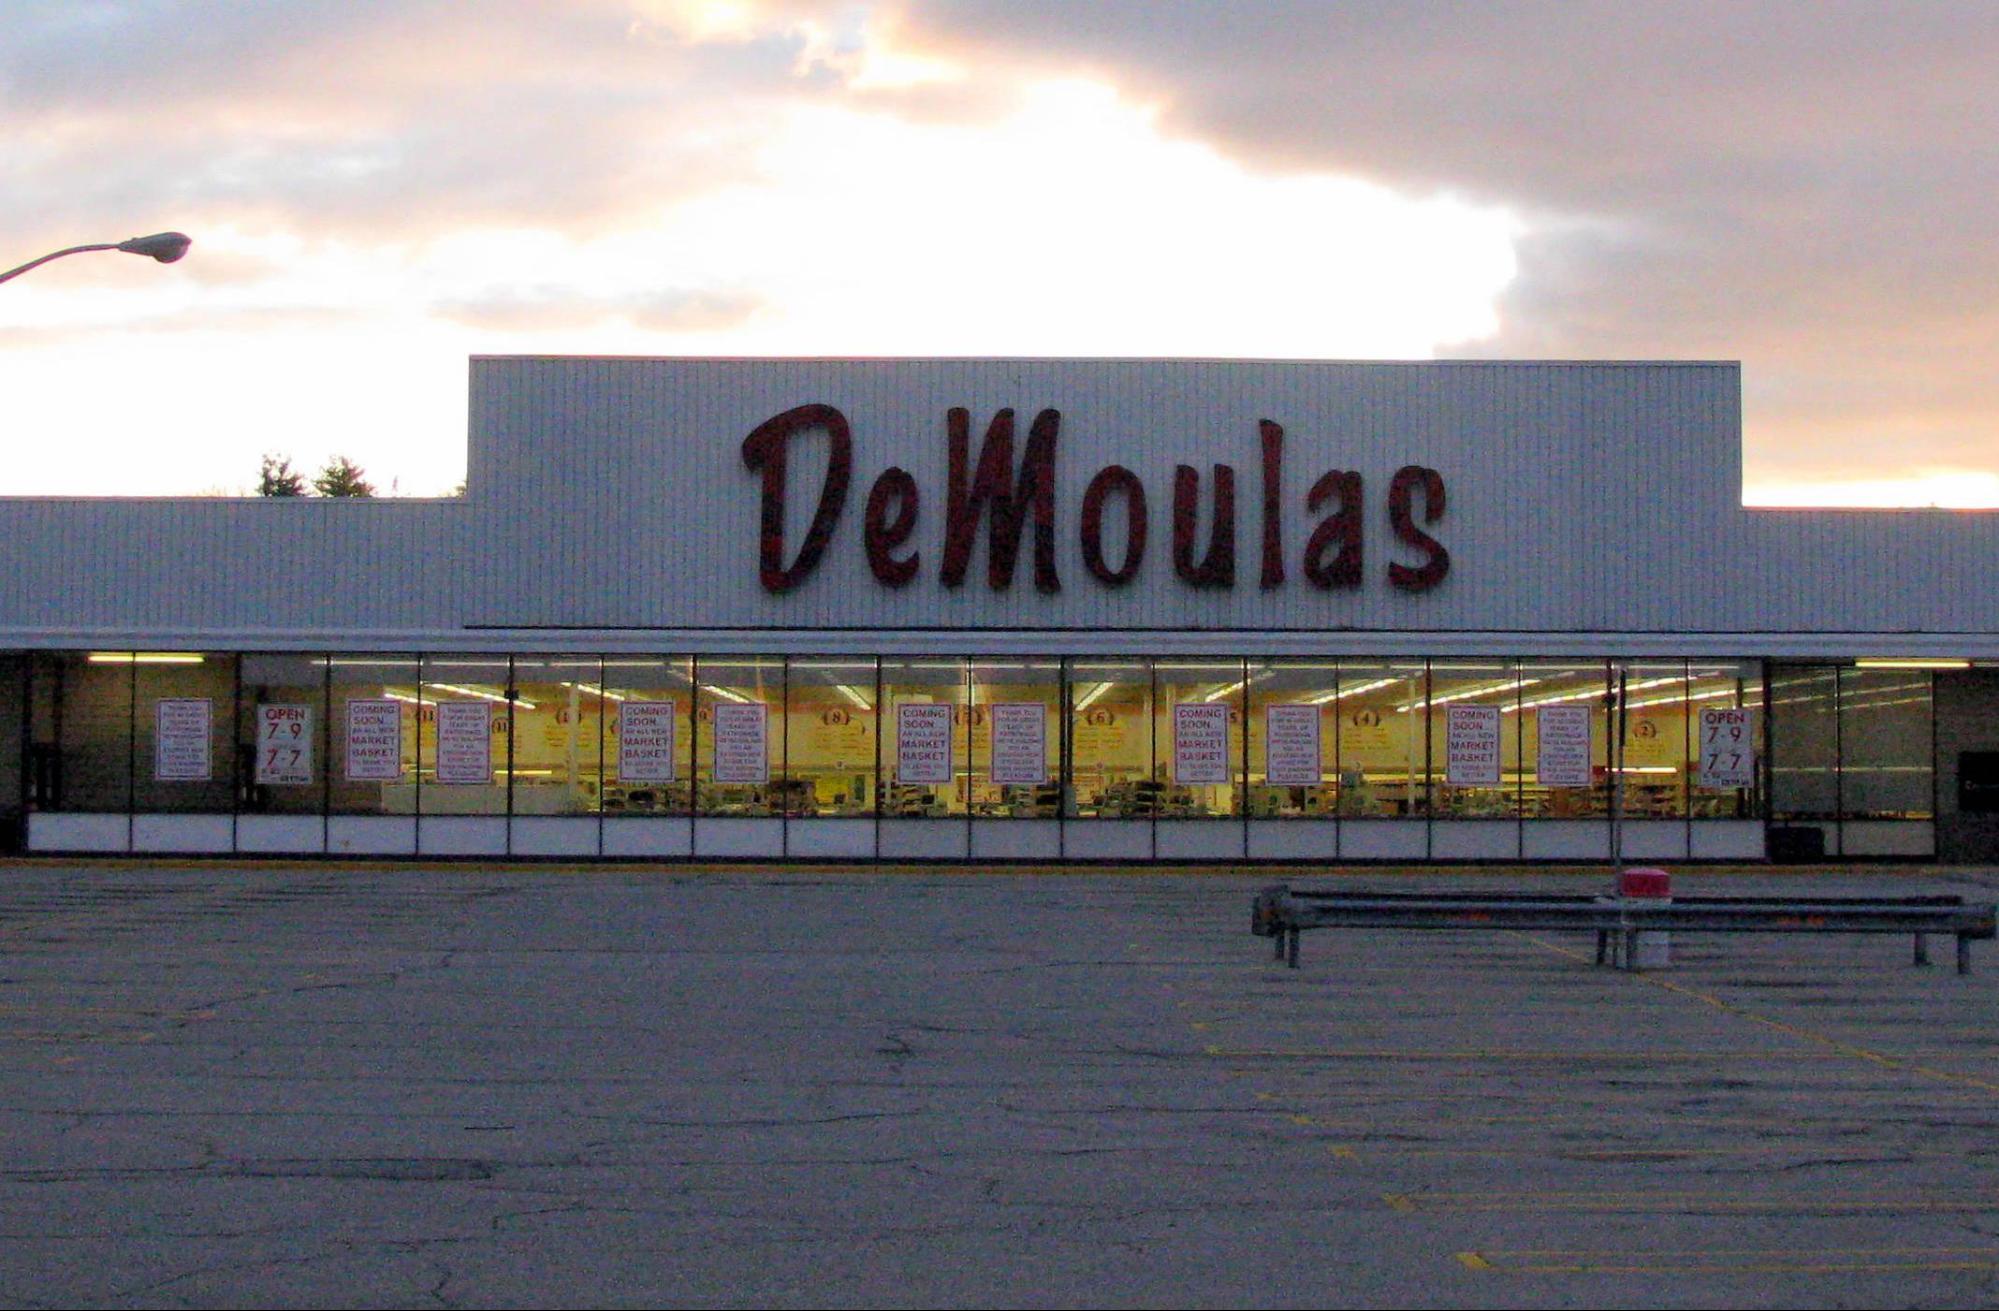 The Last DeMoulas Market Storefront 